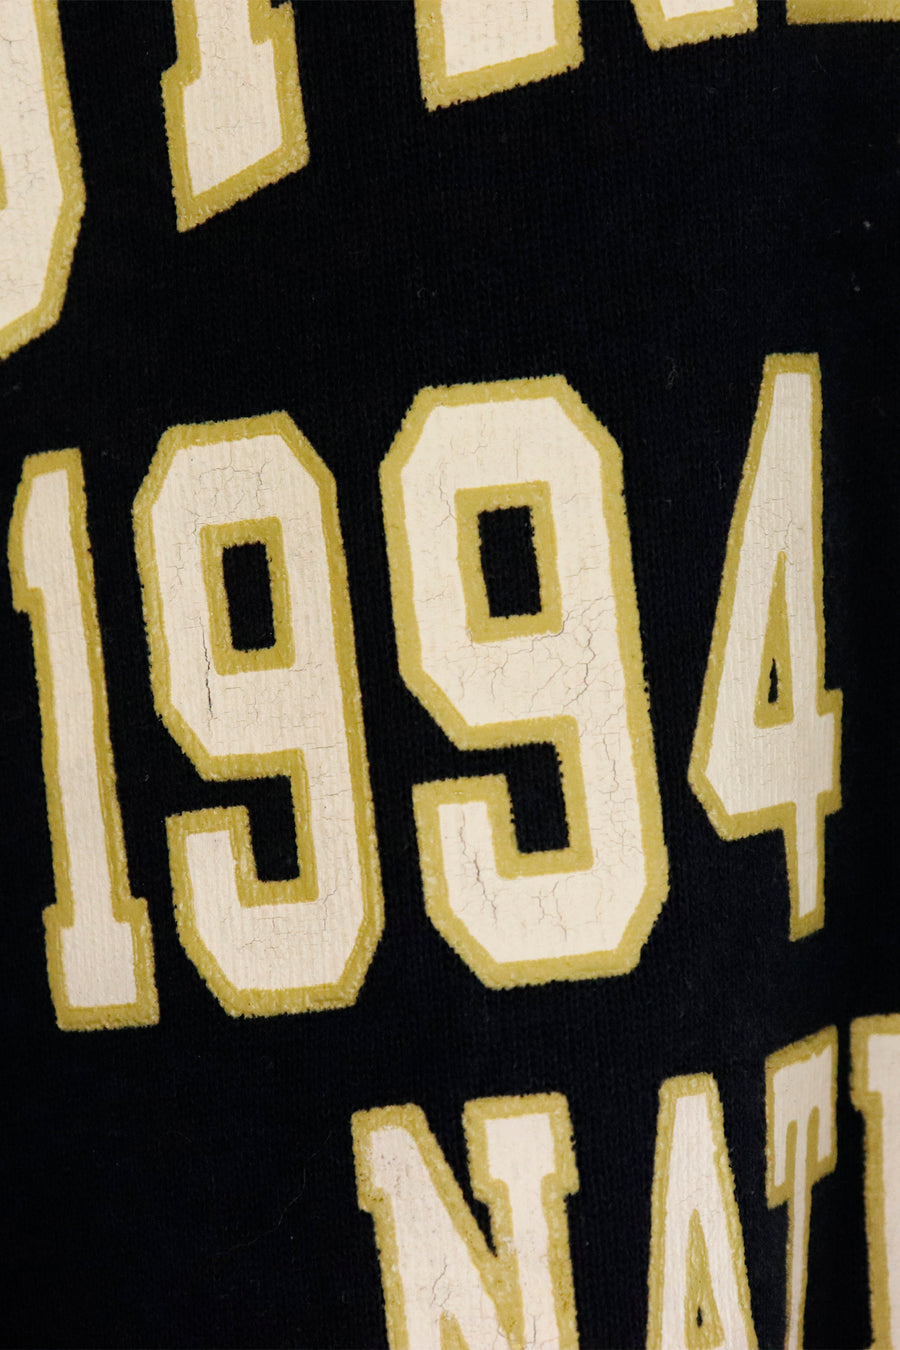 Vintage 1994 Notre Dame Fencing Champions Block Letters Crewneck Sweatshirt Sz XL